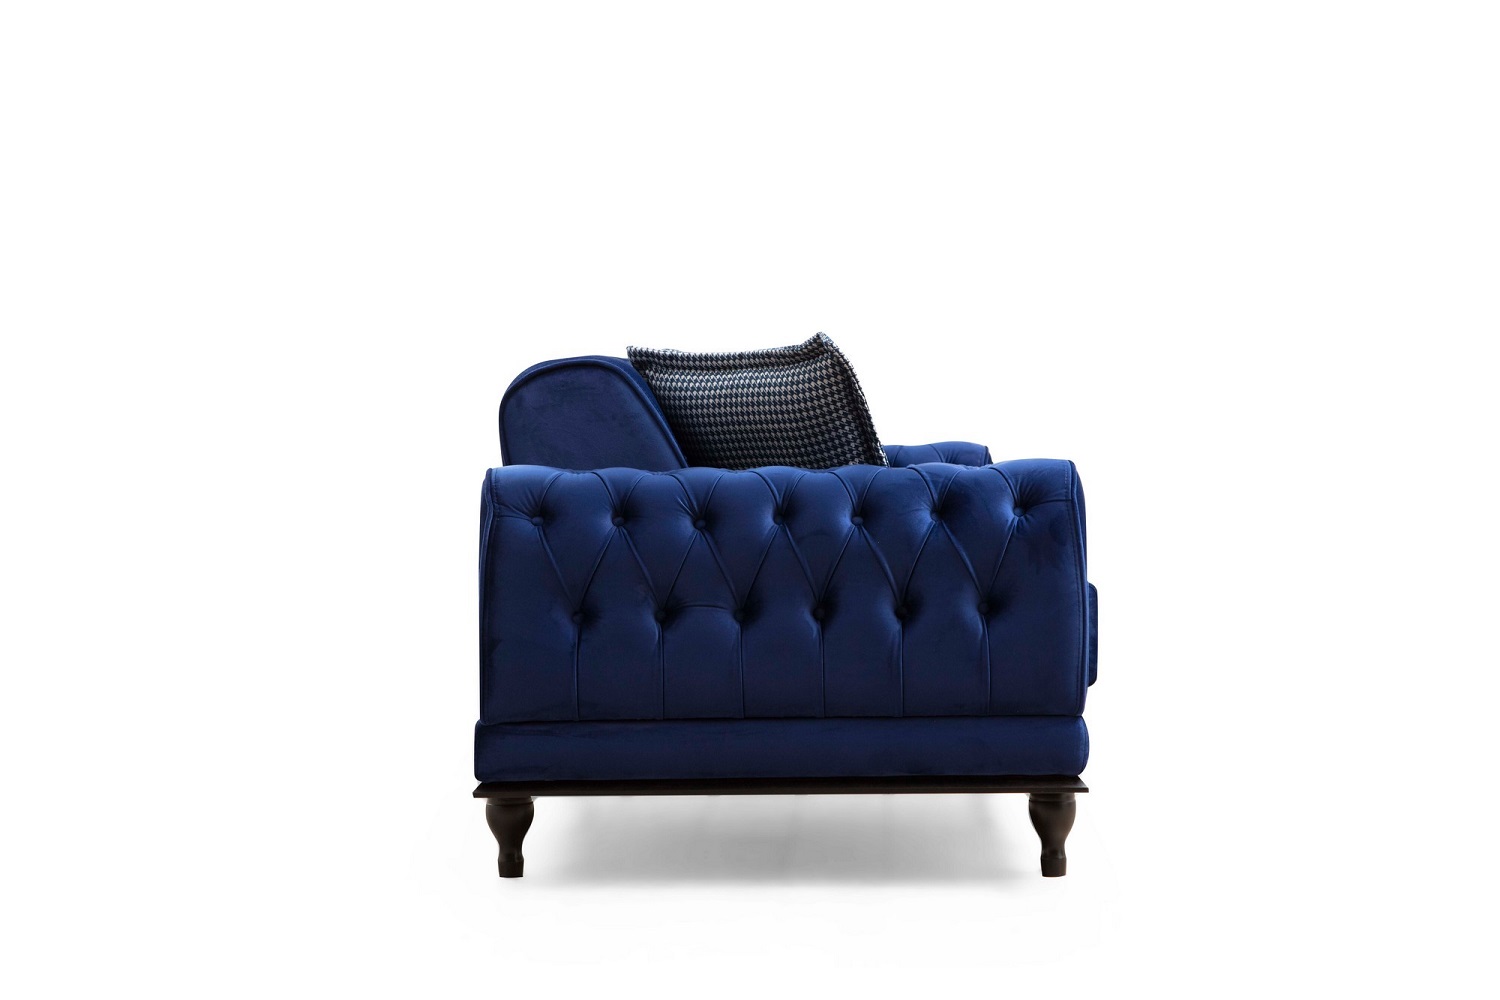 dizajnova-rozkladacia-sedacka-rococo-220-cm-kralovska-modra-4